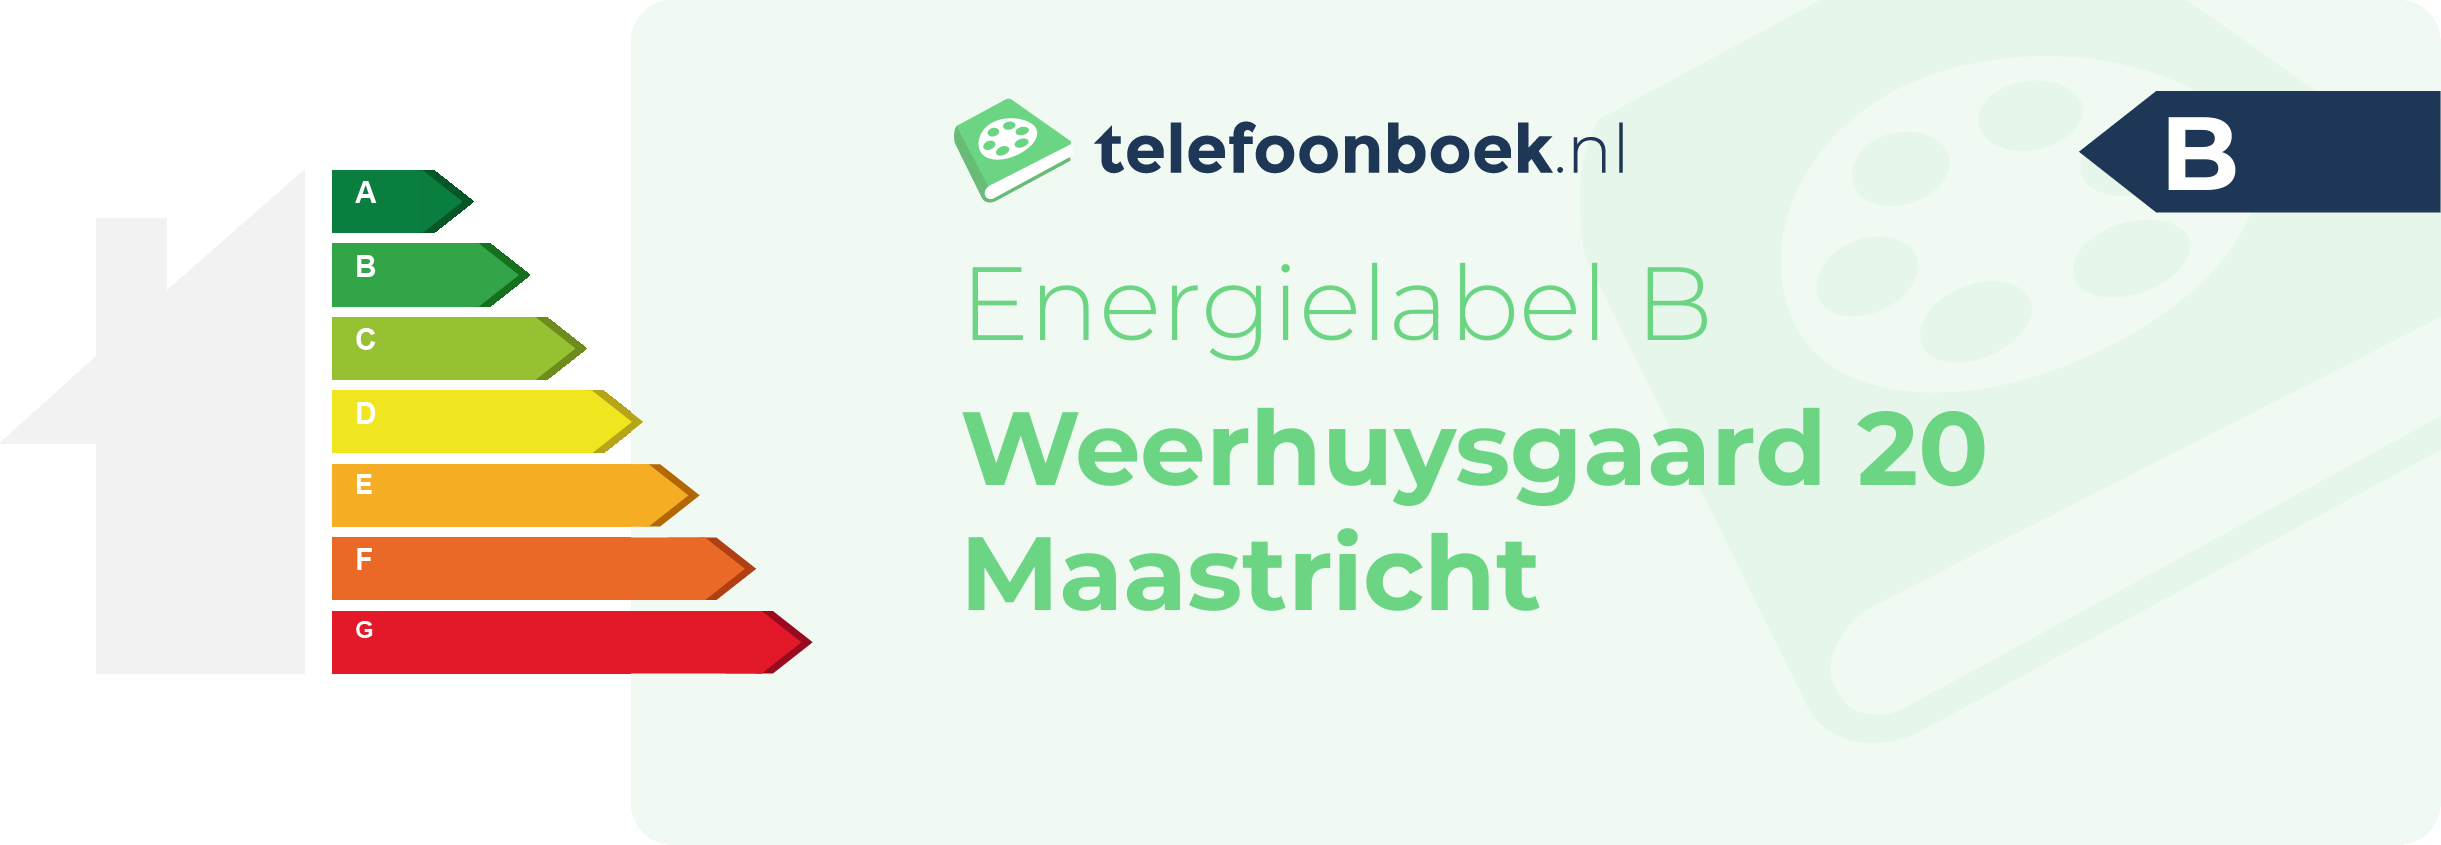 Energielabel Weerhuysgaard 20 Maastricht